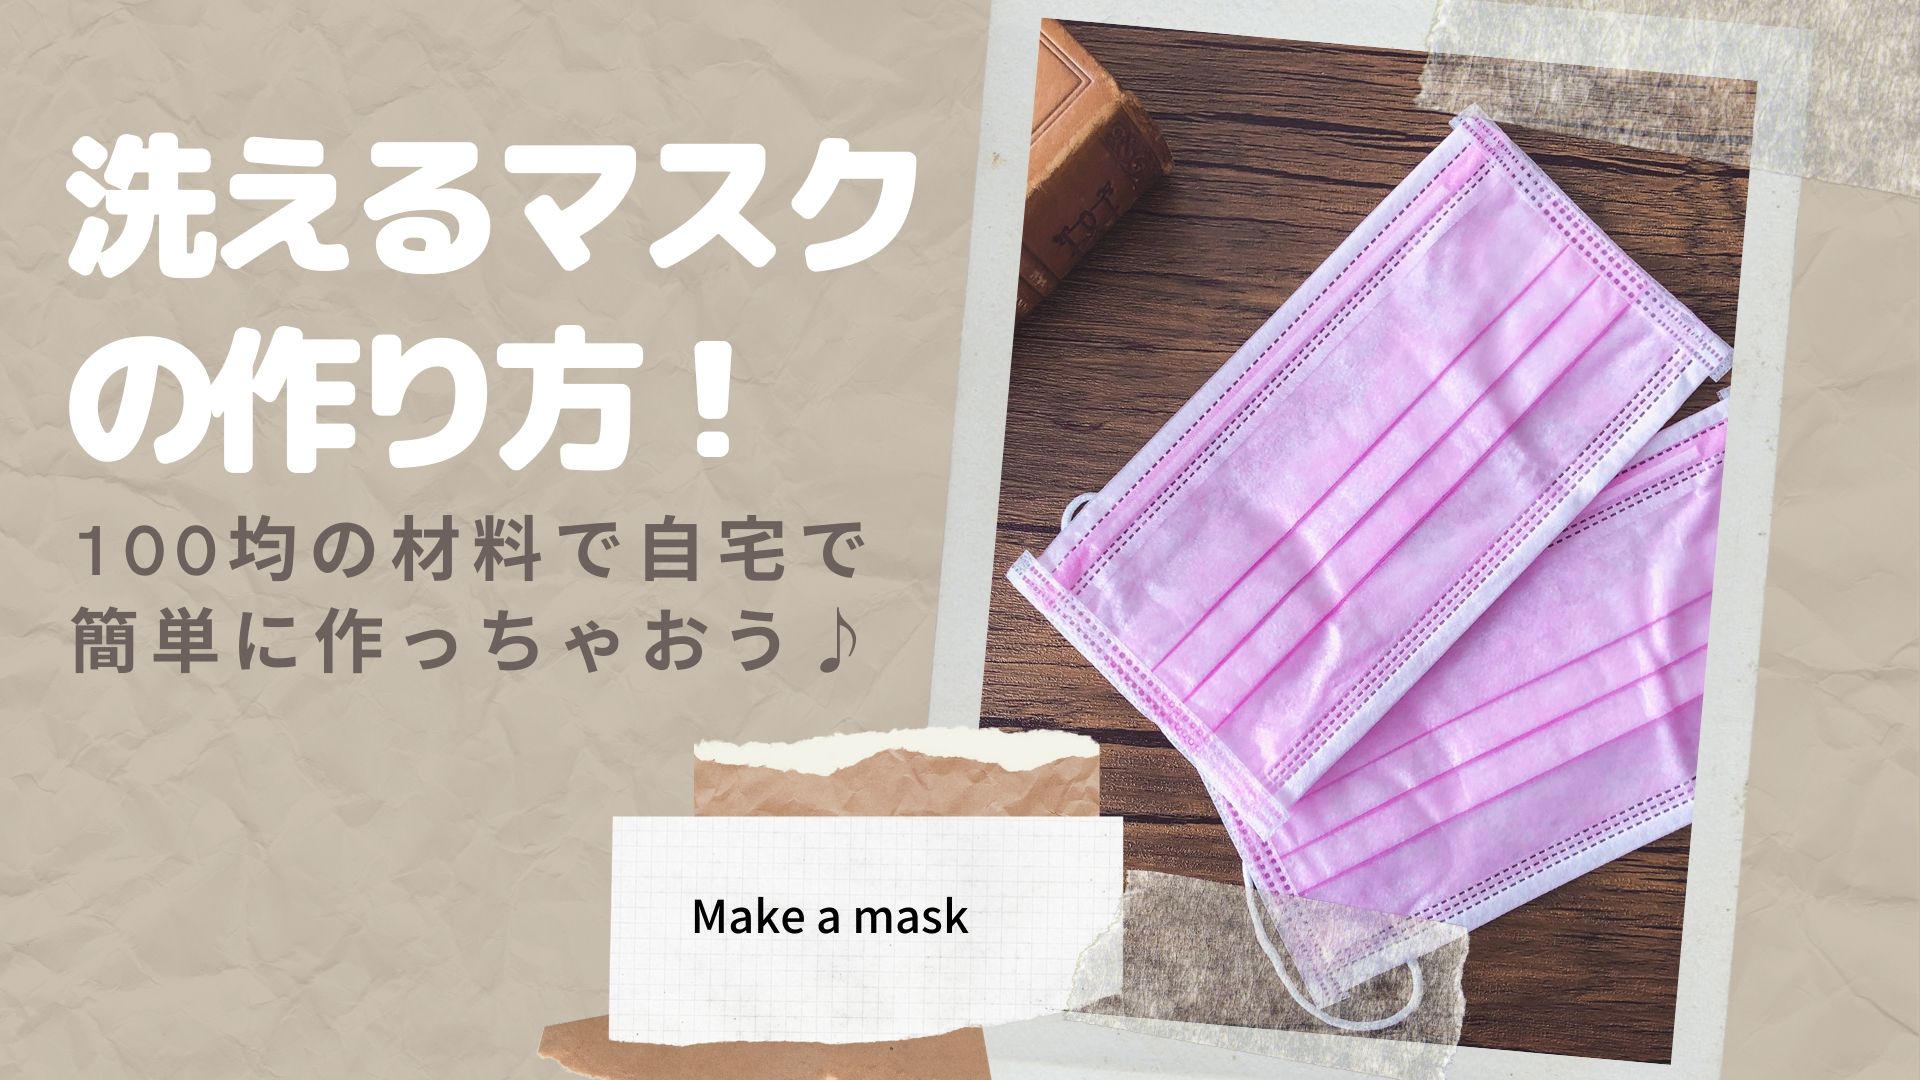 洗えるマスクの作り方 100均の材料で自宅で簡単に作っちゃおう